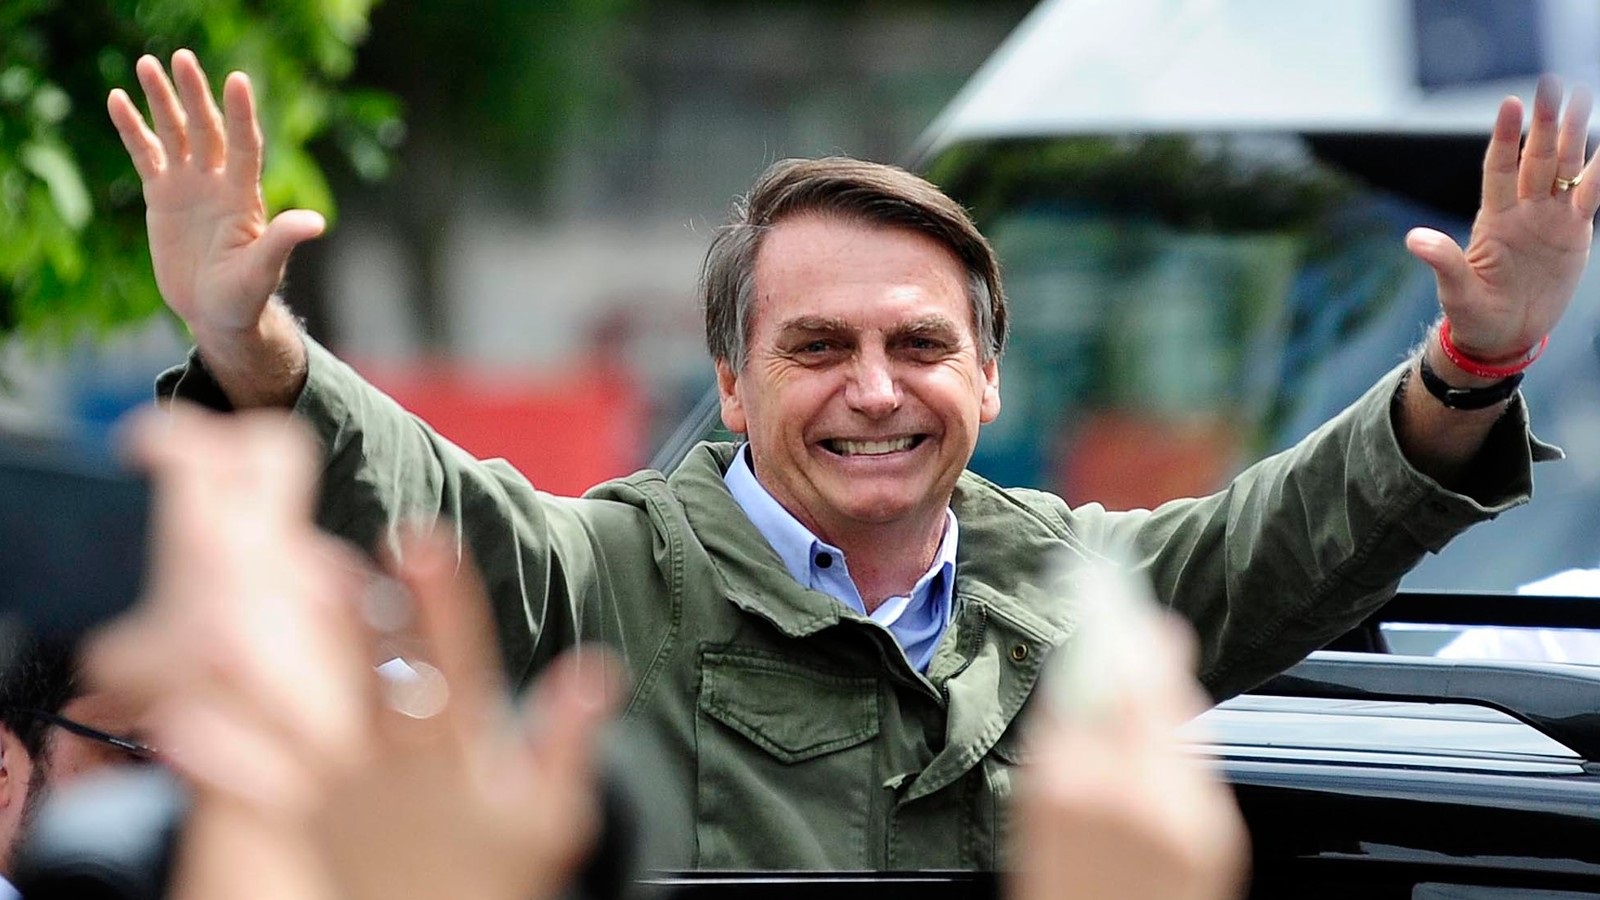 Bolsonaro em Ato Público após a vitória em 2018, após a vitória Bolsonaro nunca visitou o ES.